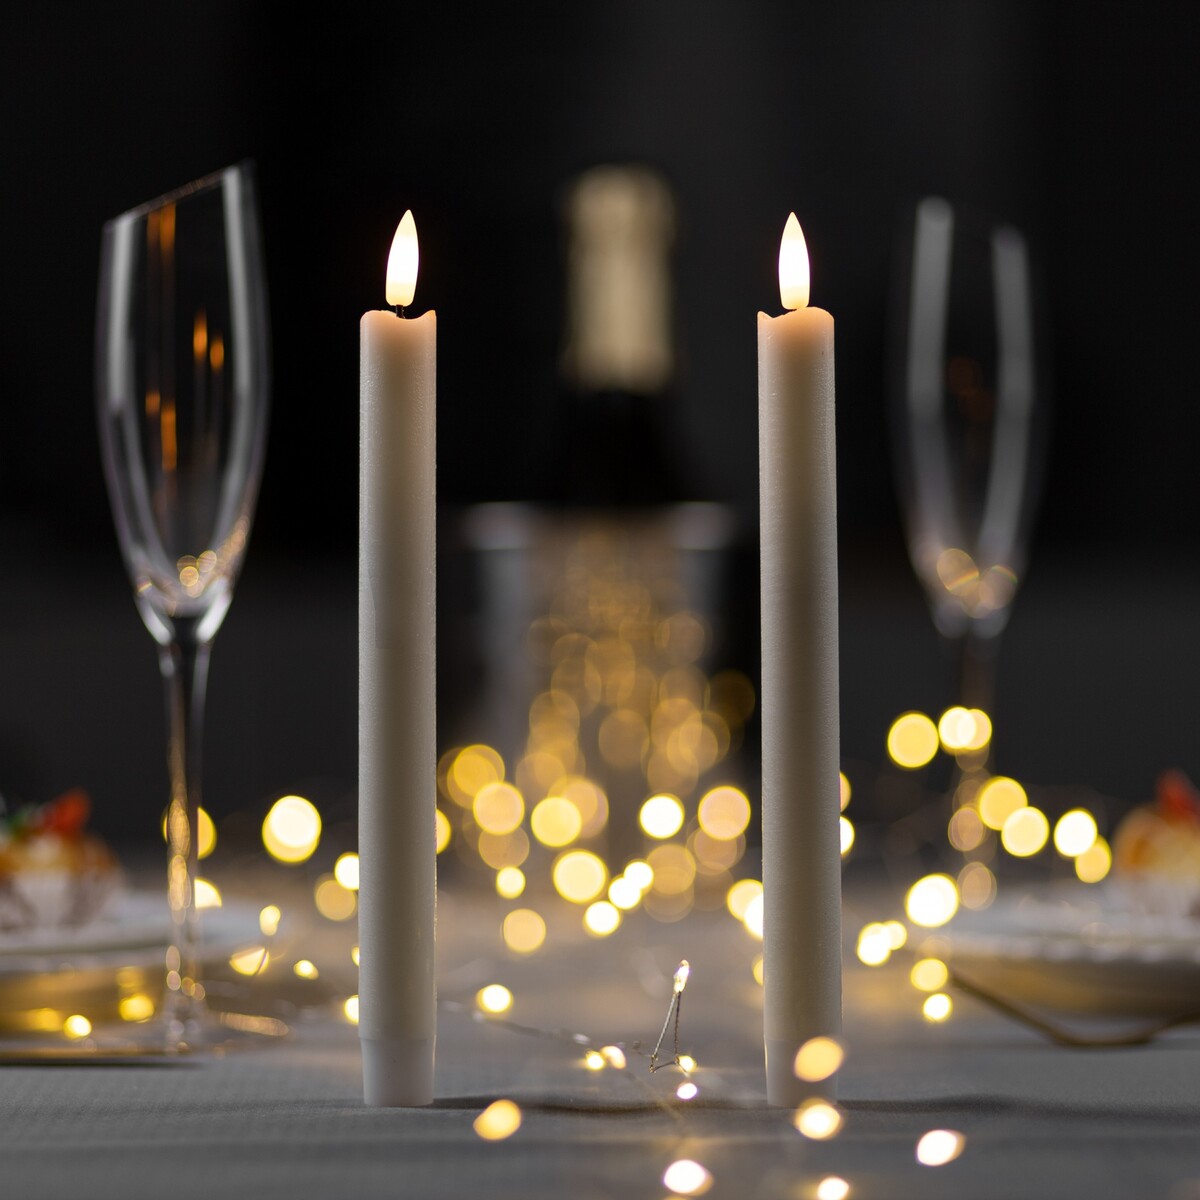 Набор светодиодных свечей, белые, 2 × 25 × 2 см, пластик, воск, батарейки ааах2 (не в комплекте), свечение теплое белое, 2 шт. светодиодная свеча бежевая 7 × 15 × 7 см пластик батарейки аах2 не в комплекте свечение теплое белое